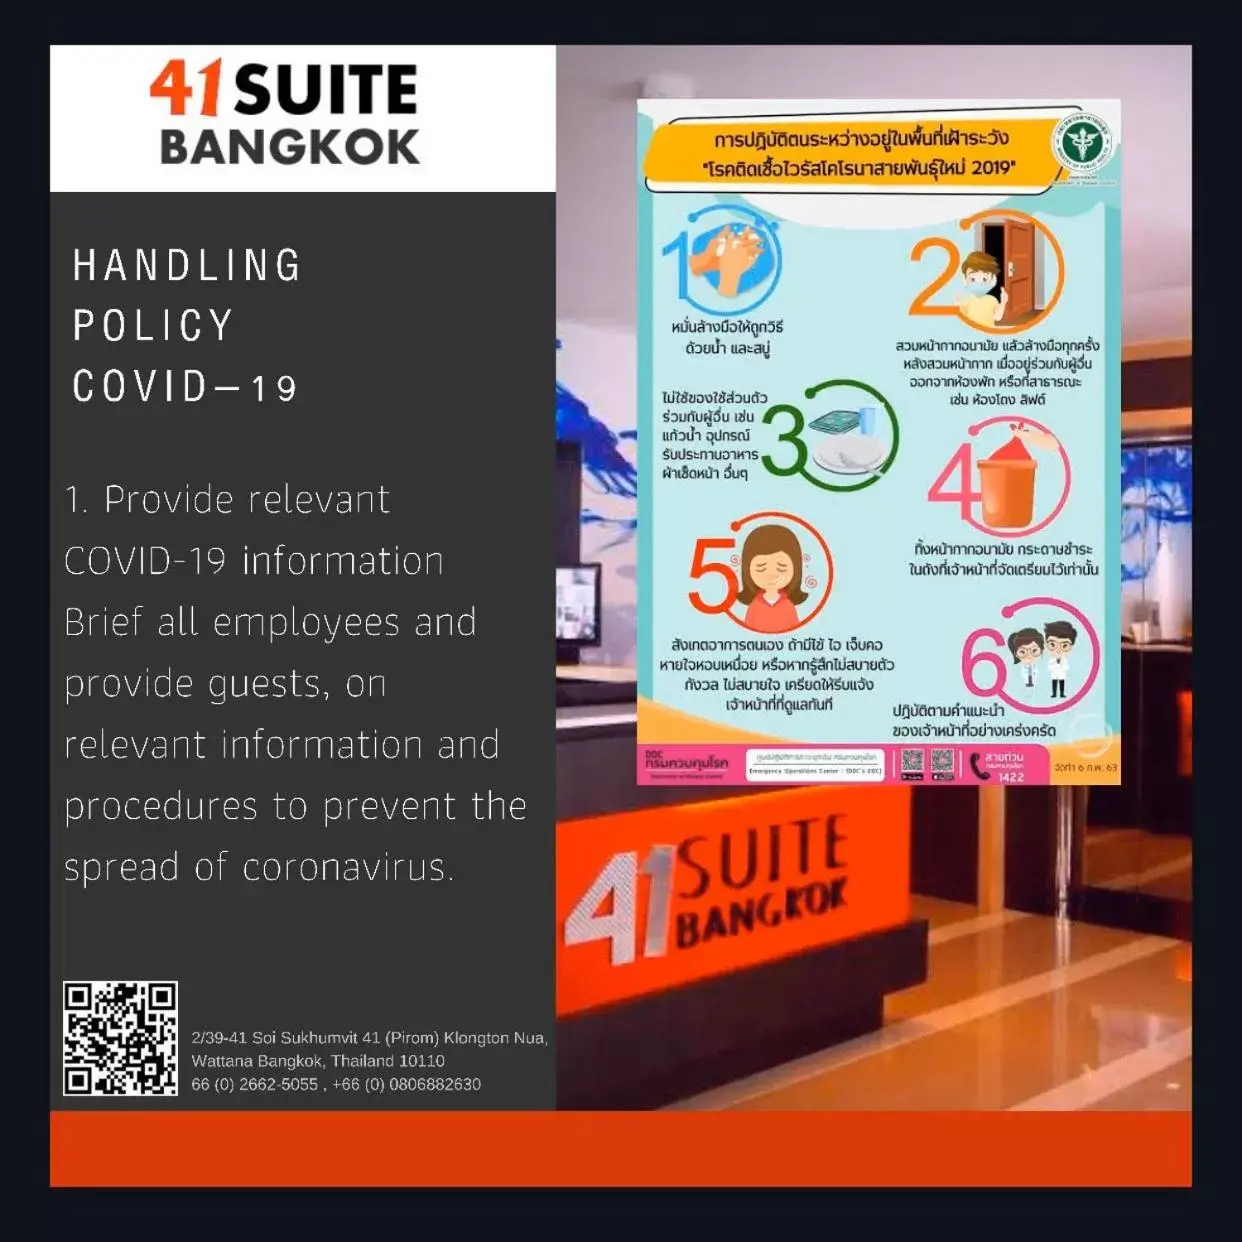 Logo/Certificate/Sign/Award in 41 Suite Bangkok